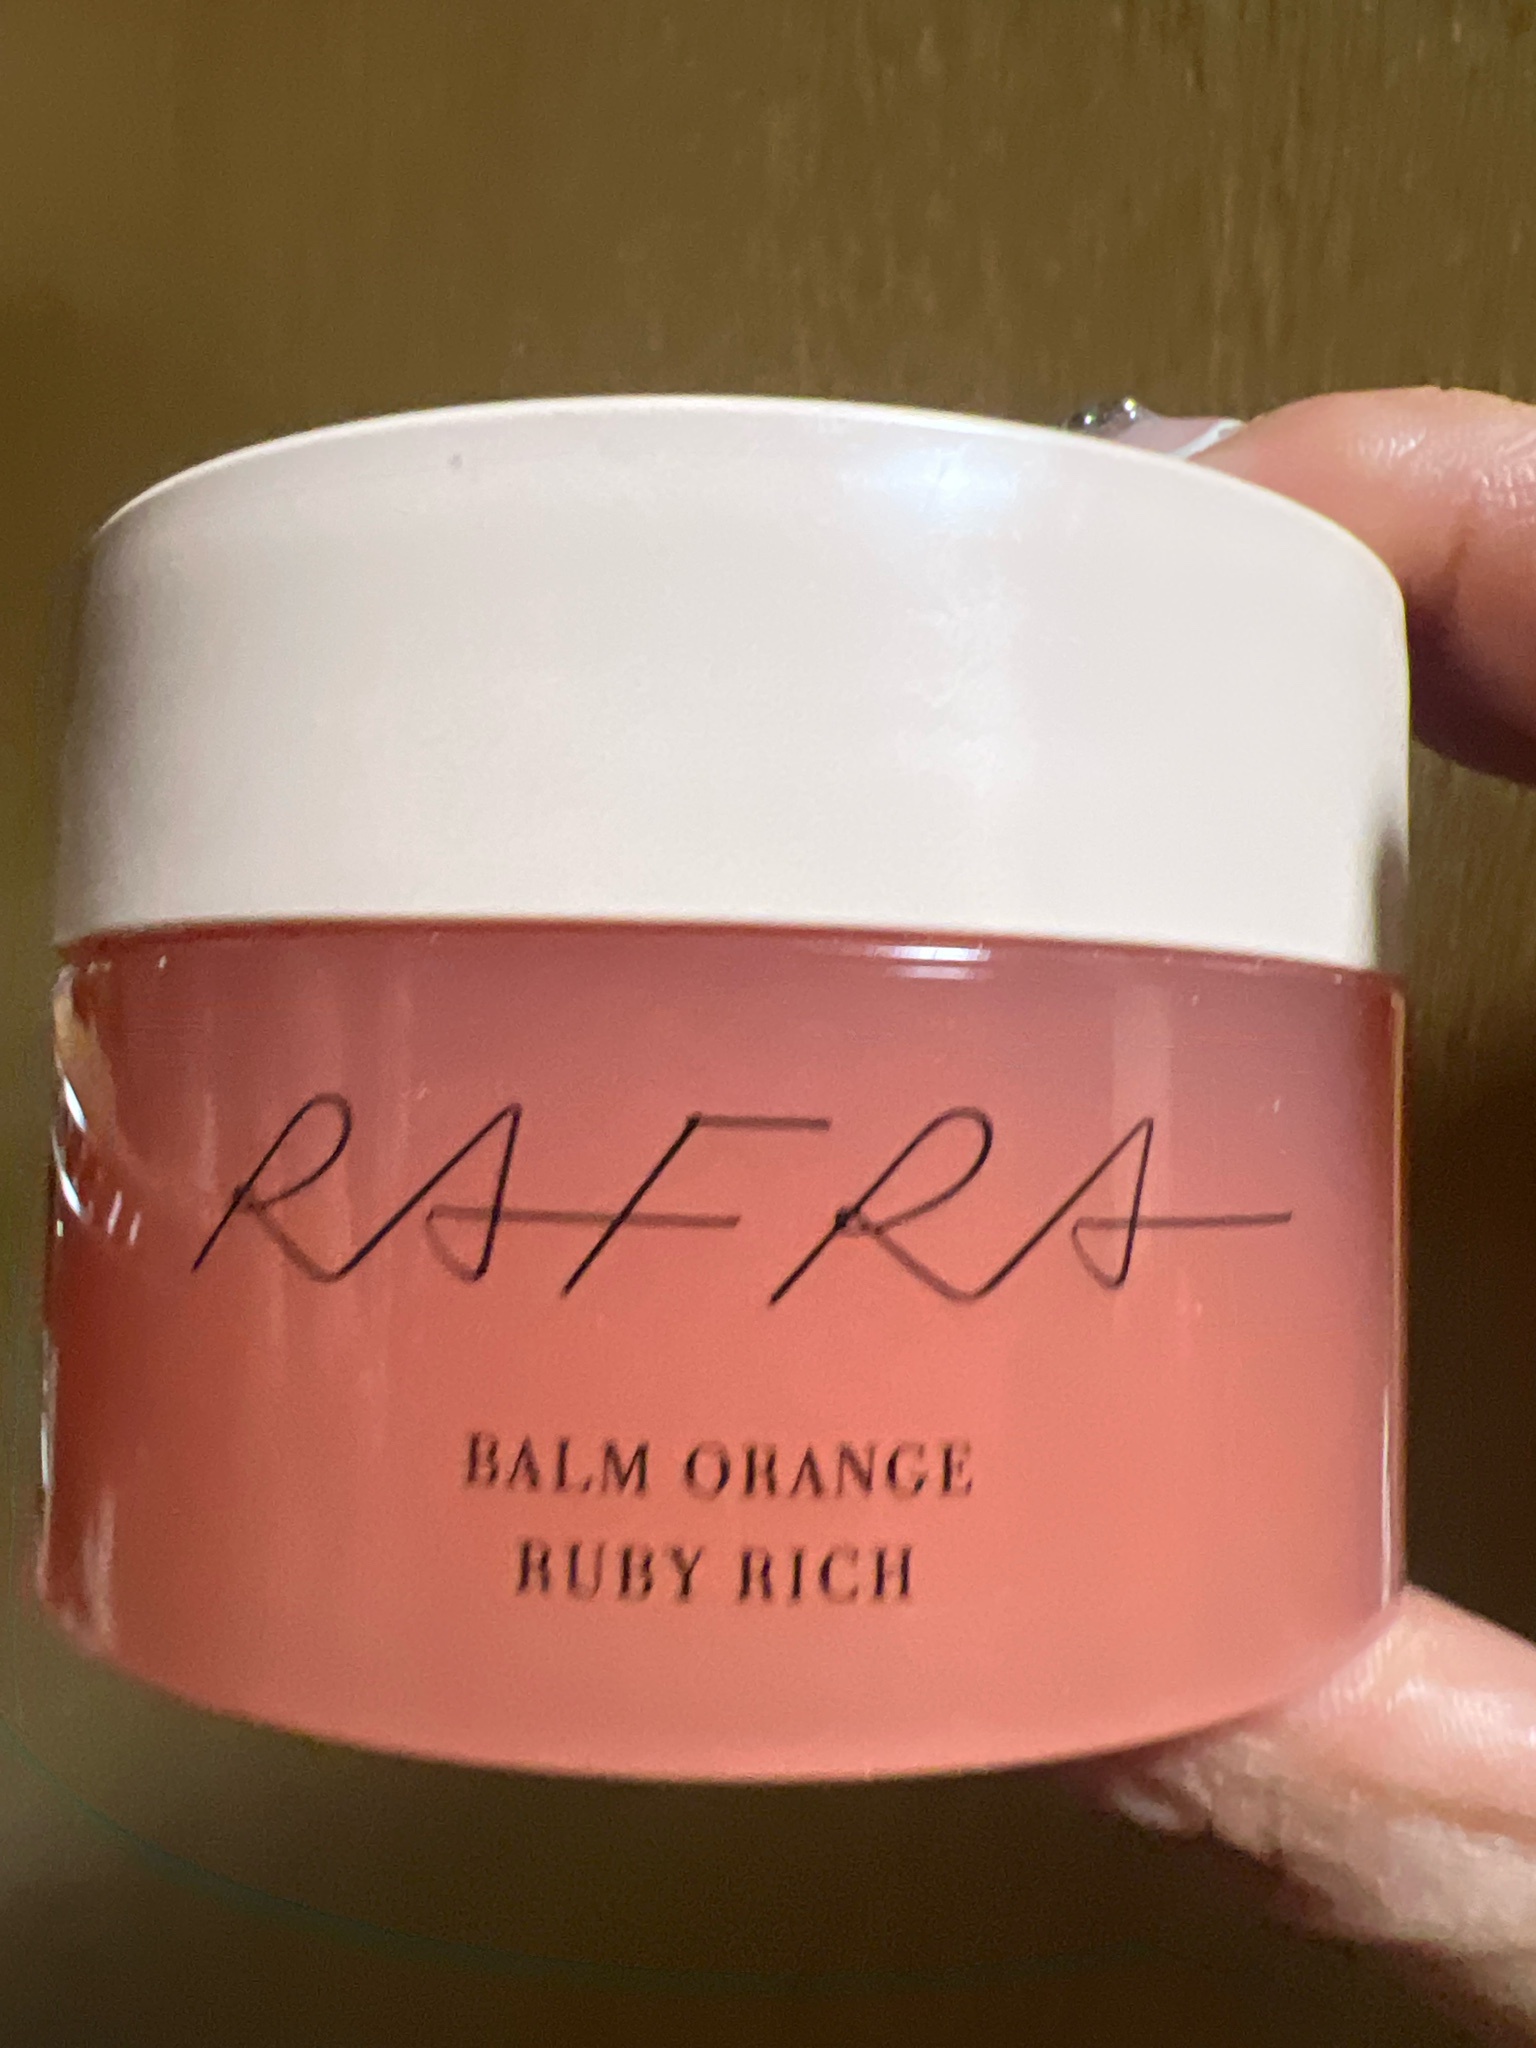 RAFRA(ラフラ) / バームオレンジ ルビーリッチ(旧)の公式商品情報 